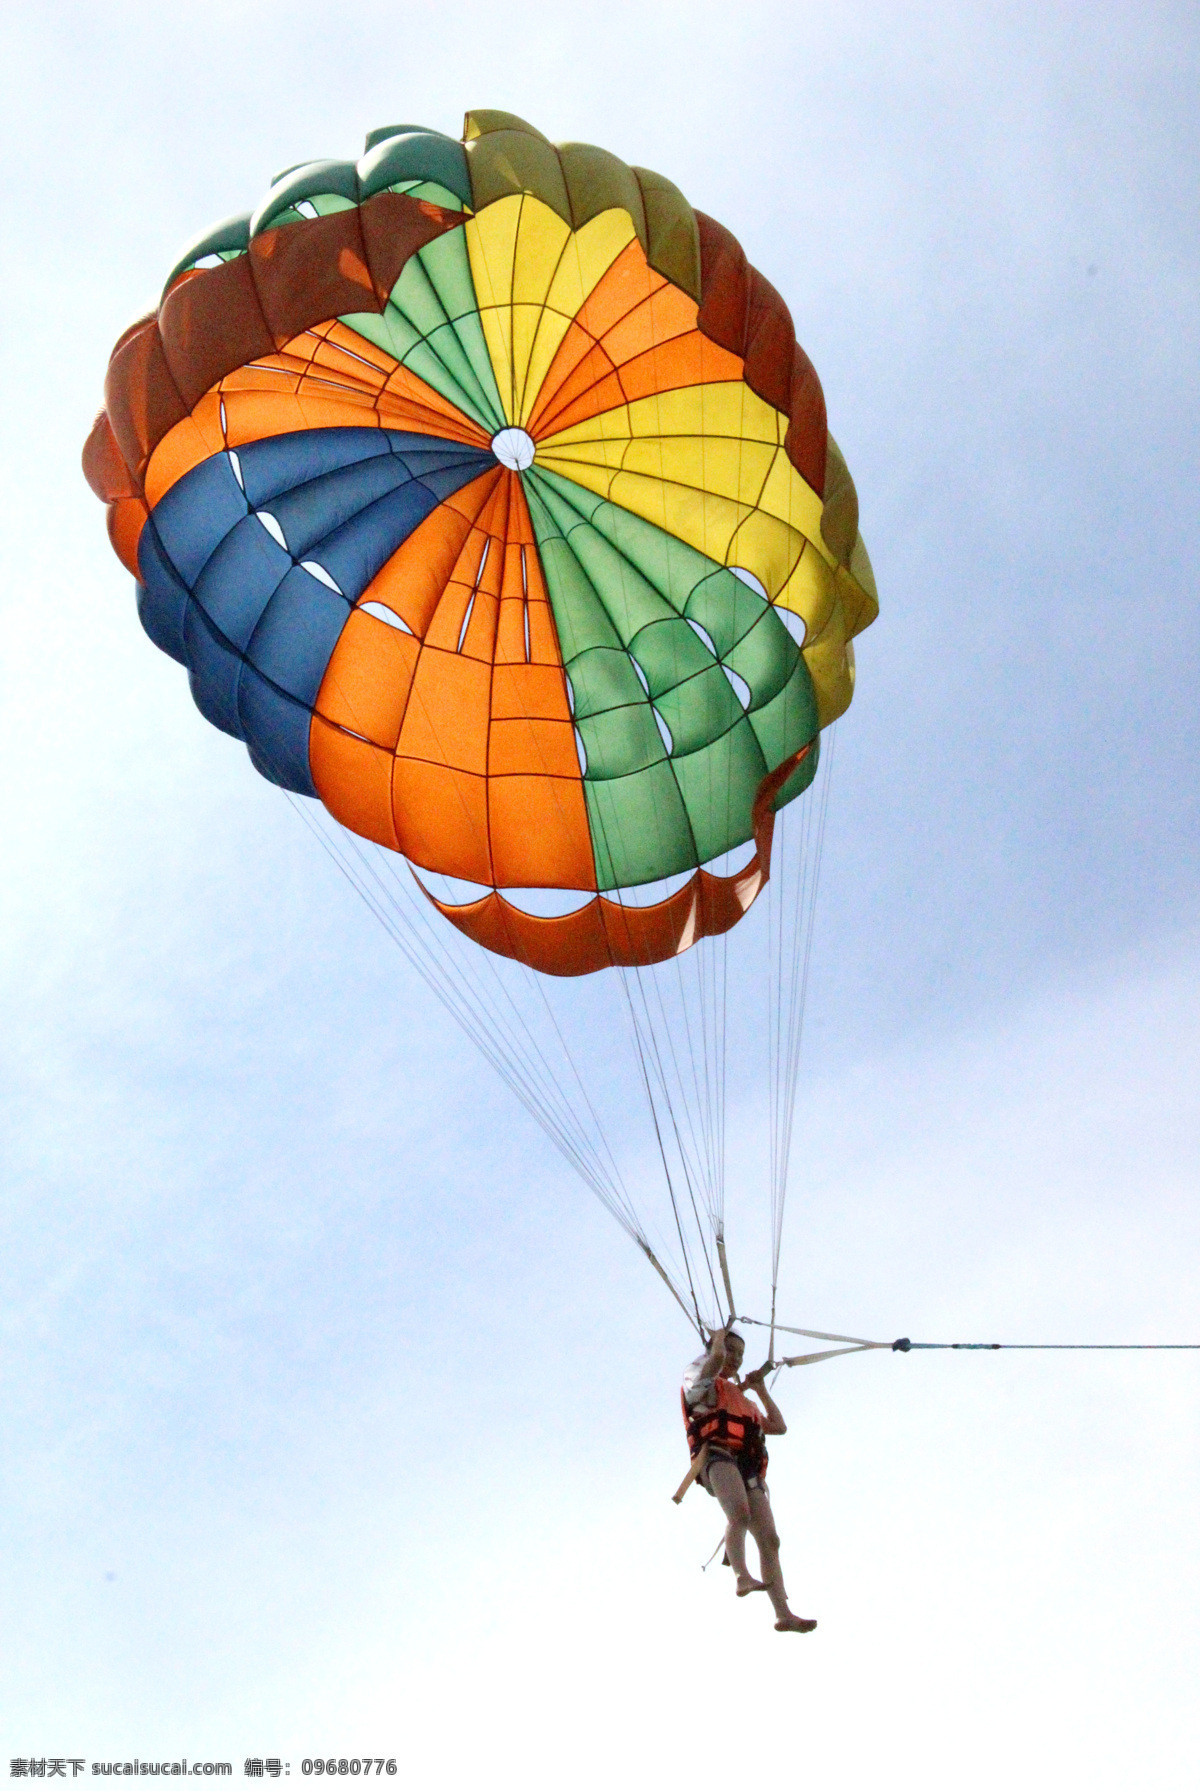 水上降落伞 海上降落伞 水上游乐项目 旅游风景 旅游摄影 空中飞人 泰国旅游 国外旅游